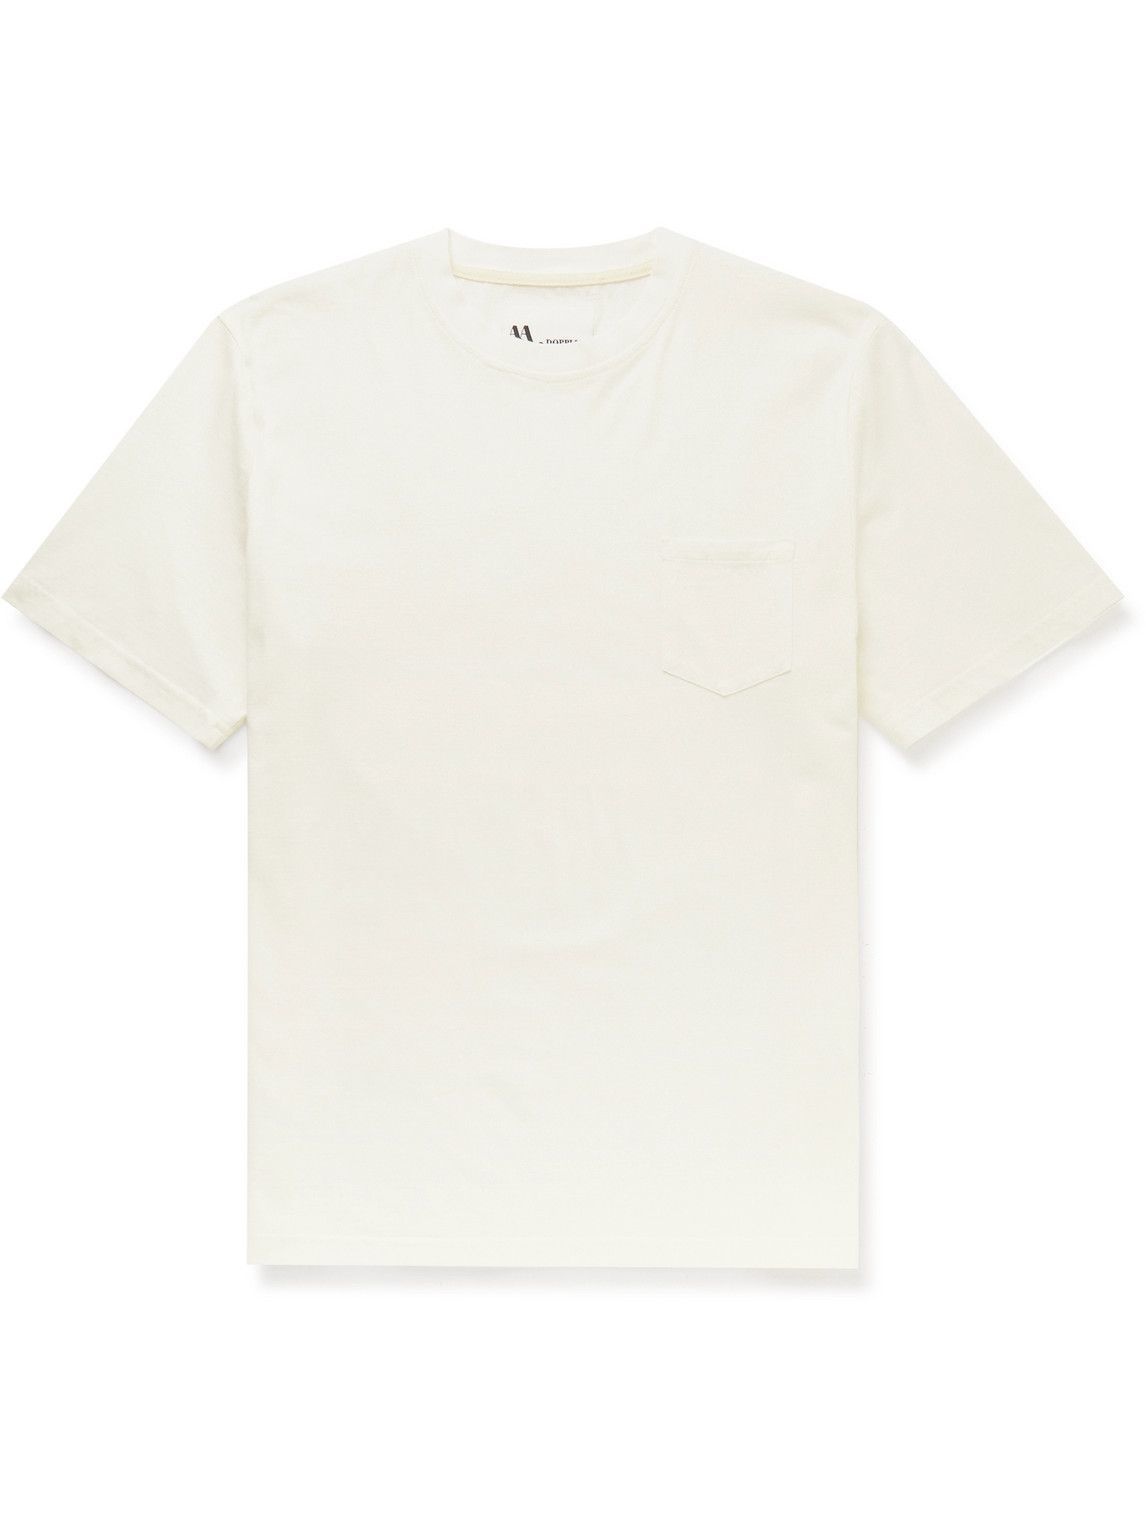 DOPPIAA - Aaktion Cotton-Jersey T-Shirt - White DOPPIAA